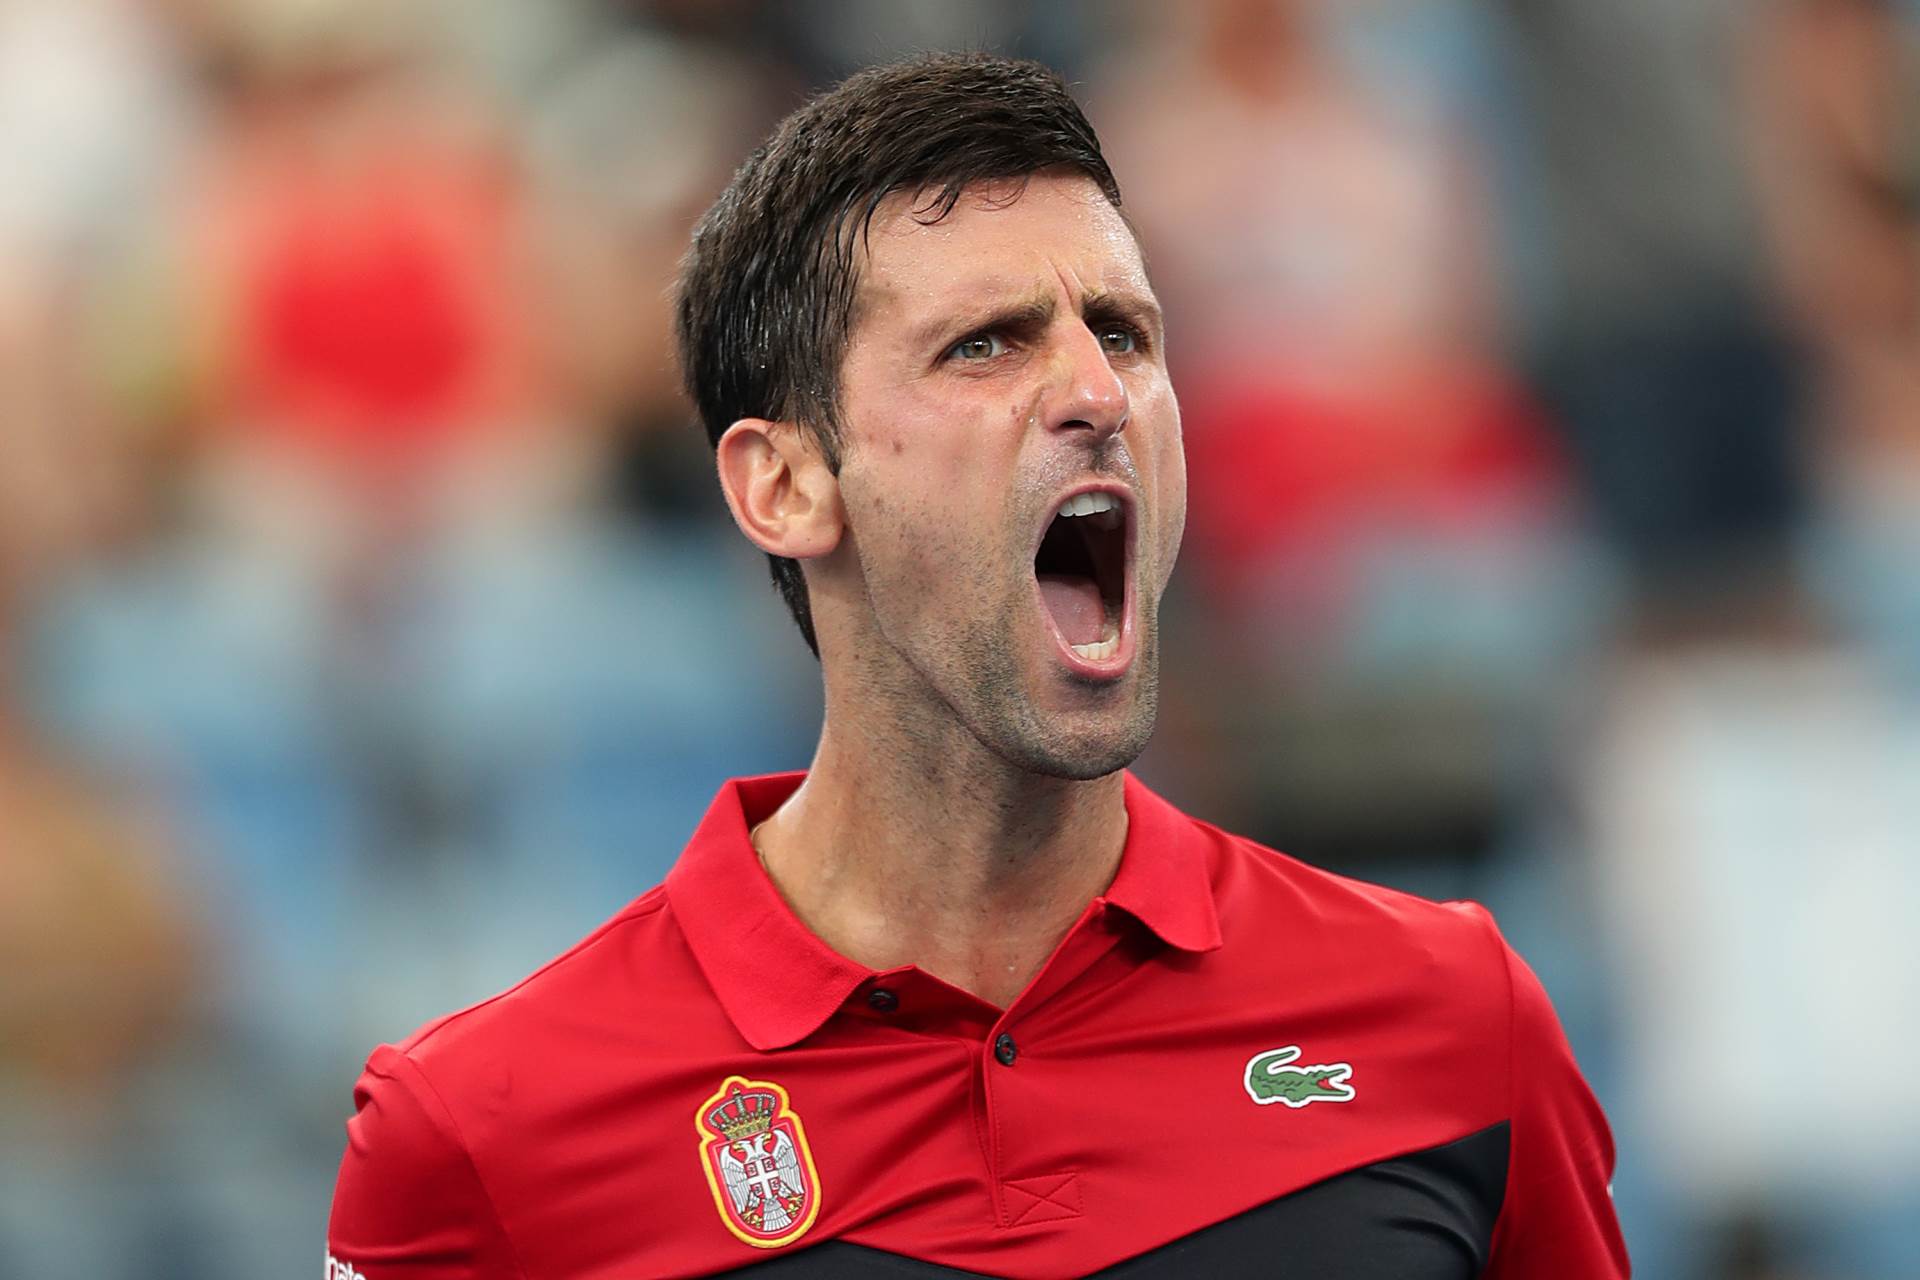  US-Open-protokol-takmicenja-korona-virus-promena-pravila-Novak-Djokovic-tenis-najnovije-vesti. 